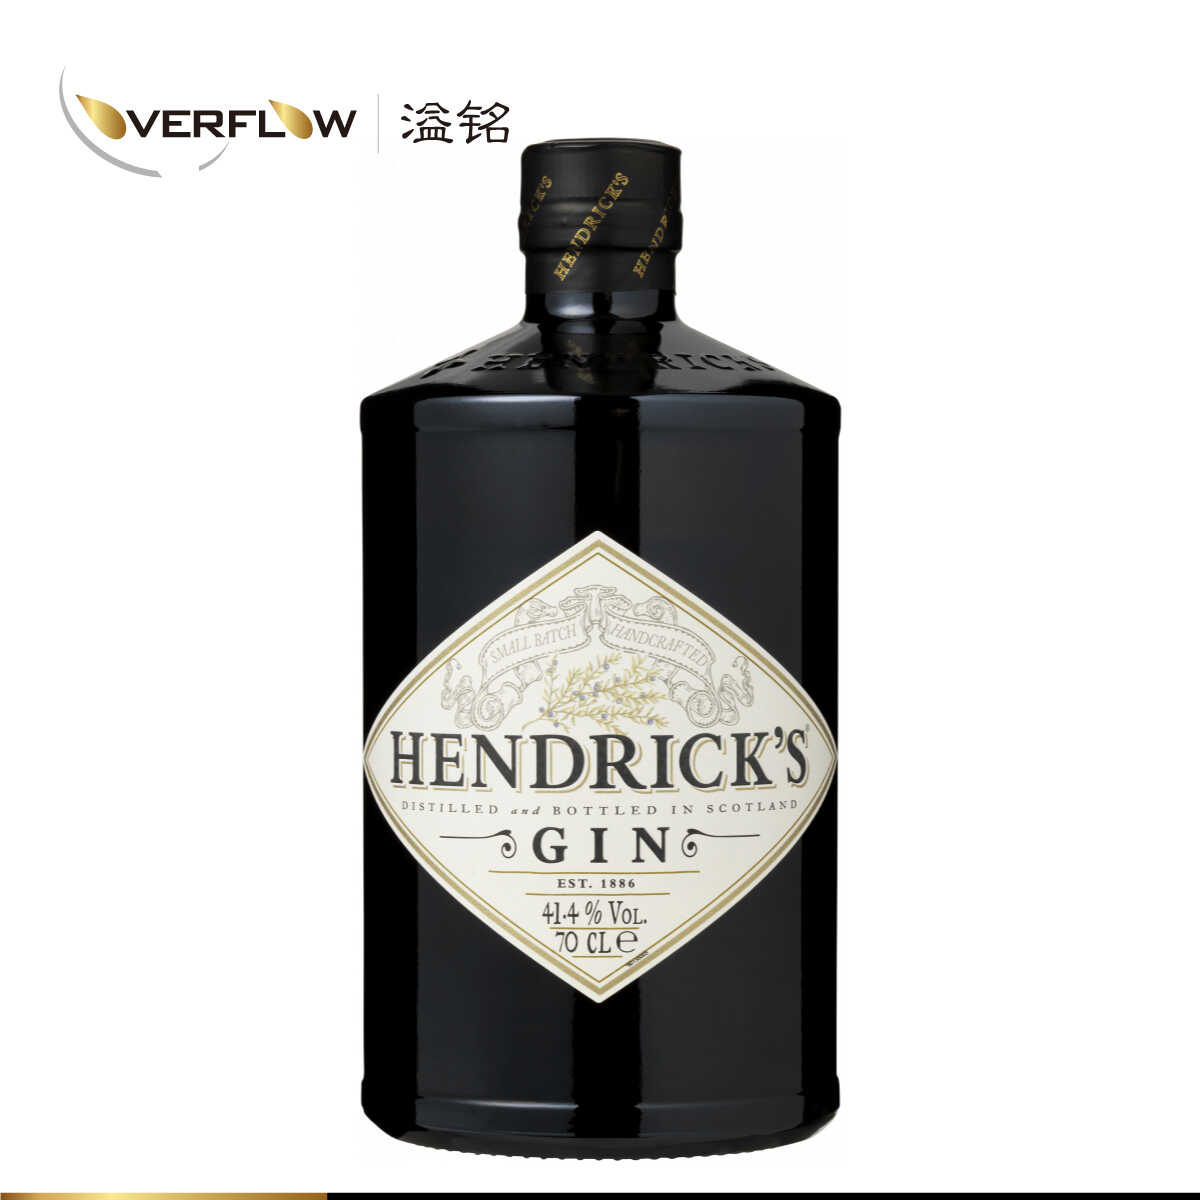 亨利爵士HENDRICK'S GIN金酒杜松子酒鸡尾酒进口洋酒700ml - 图1